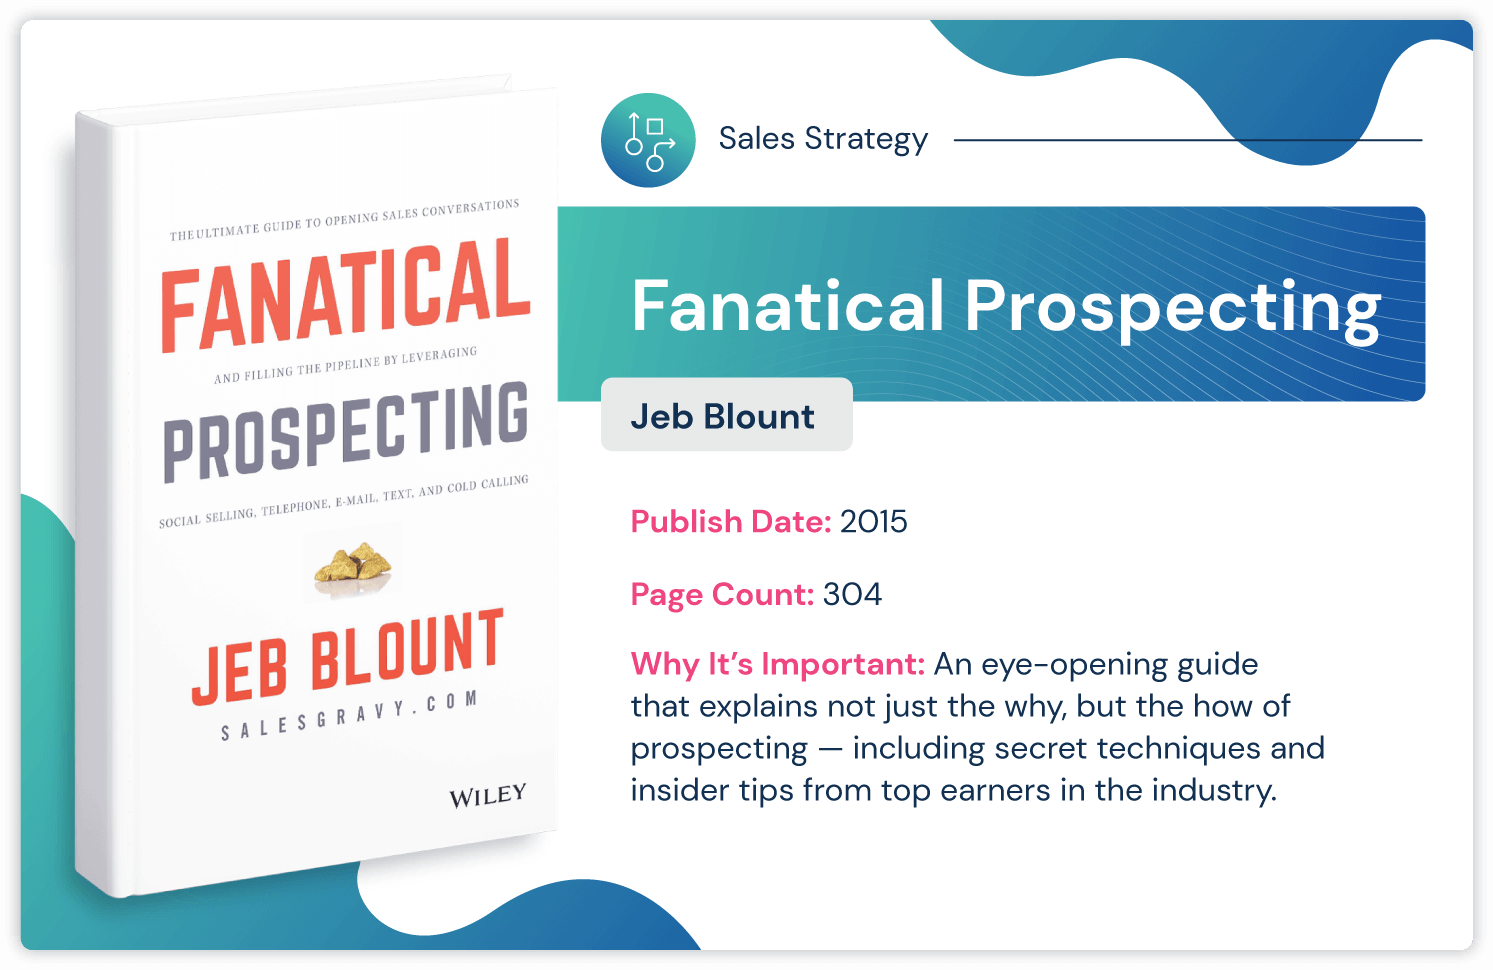 Verkaufsstrategiebuch „Fanatical Prospecting“ von Jeb Blount über Insider-Prospecting-Tipps, erschienen 2015 und 304 Seiten